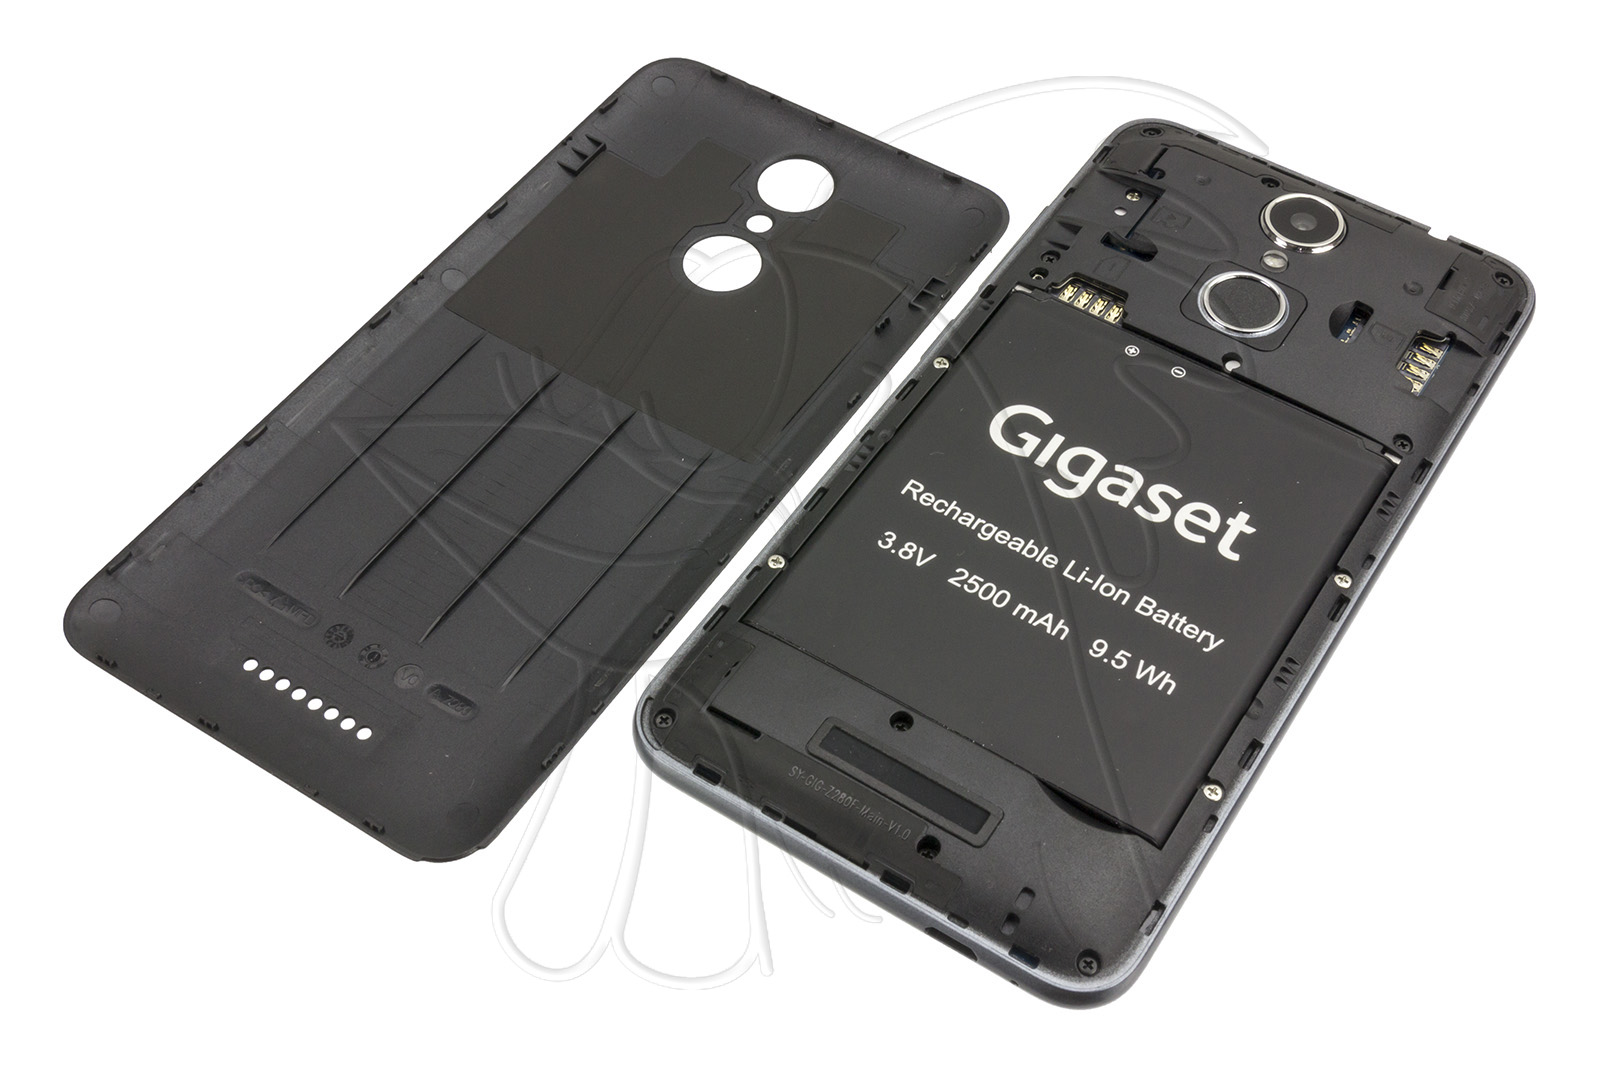 gigaset tablet battery removal